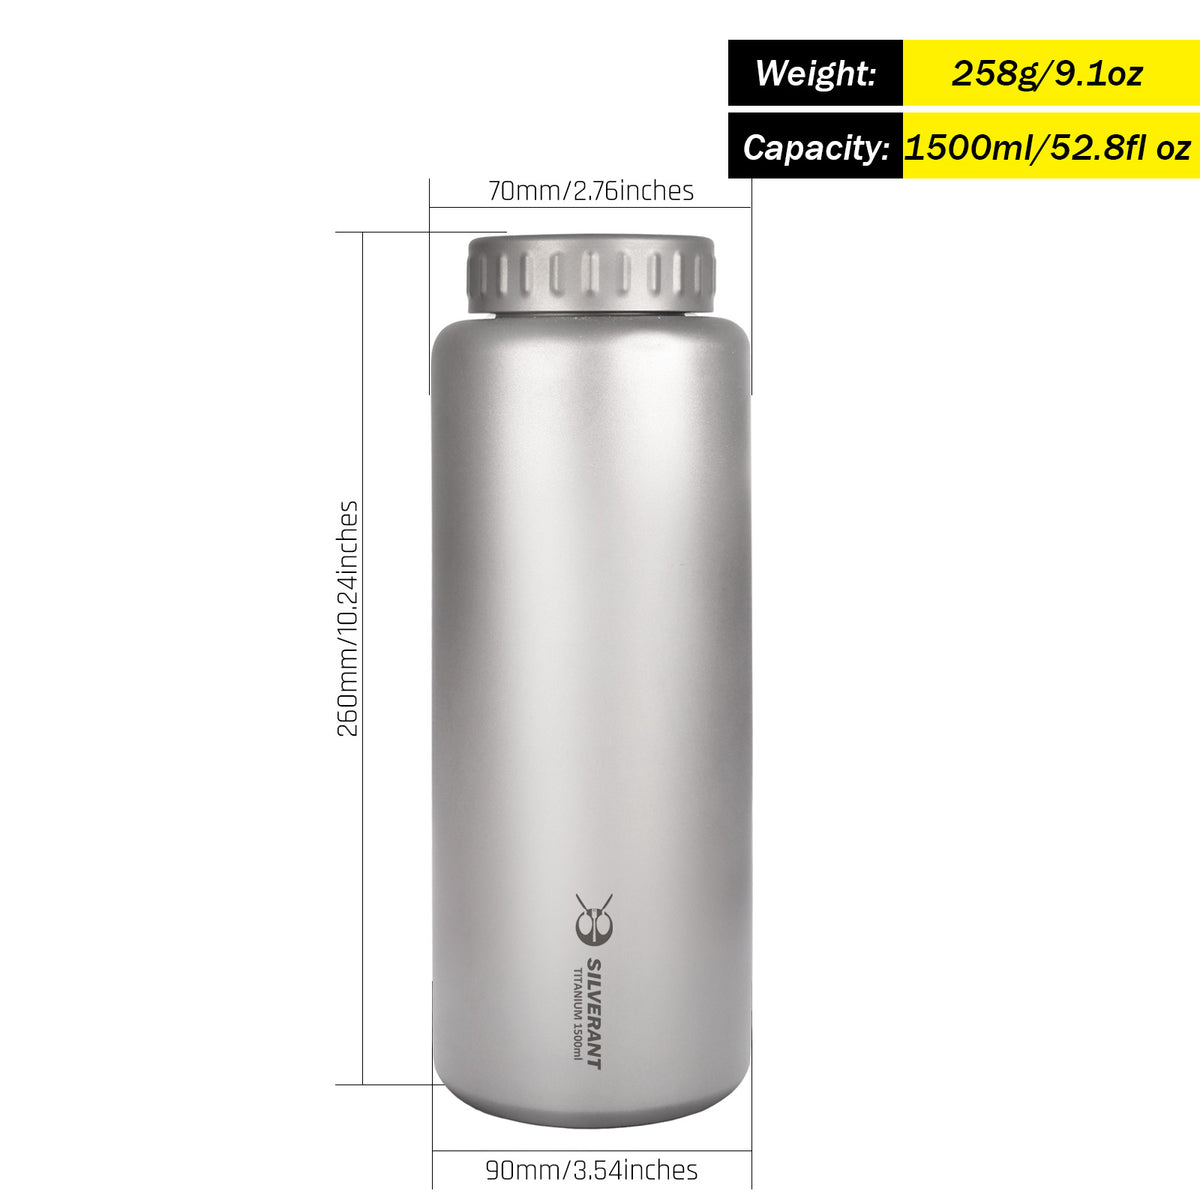 Extra Large Titanium Water Bottle 1500ml/52.8 fl oz